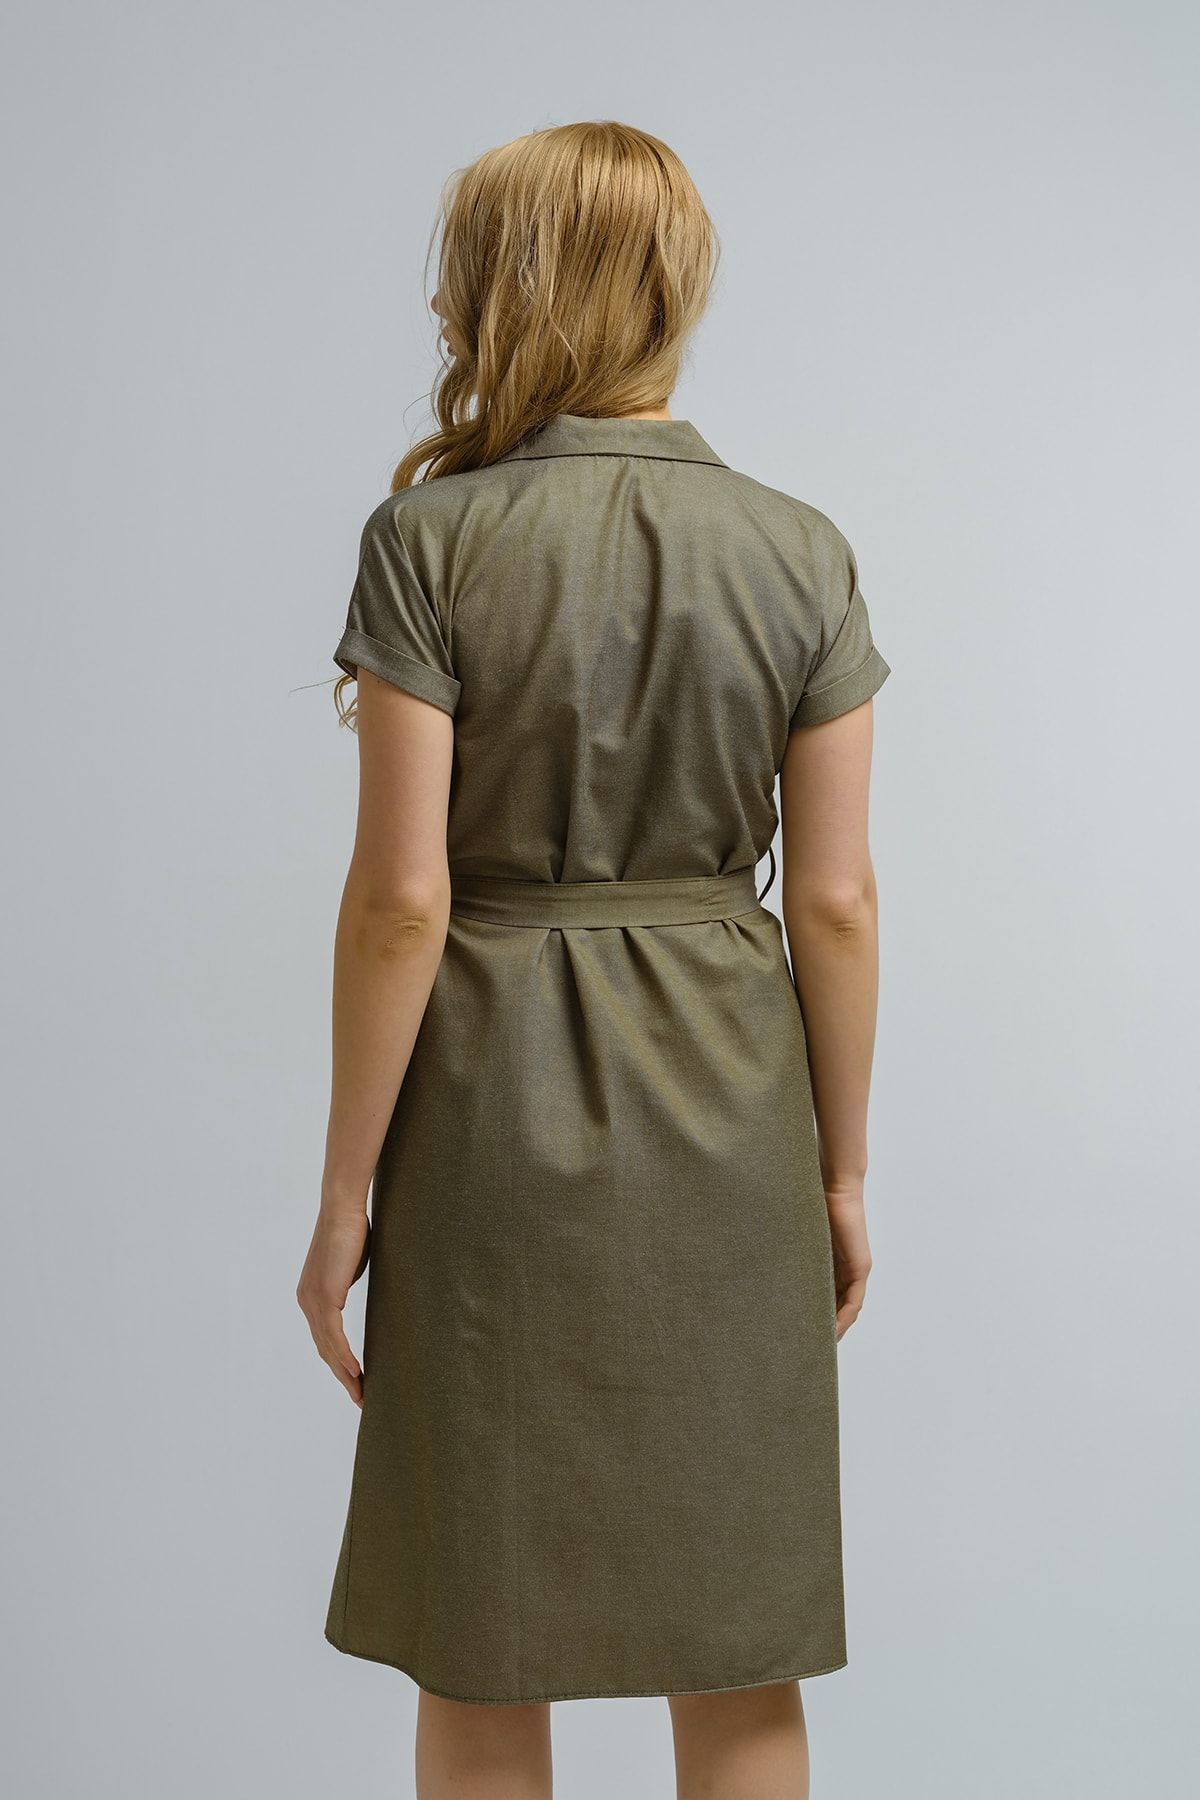 Kadın Haki Beli Kemerli Kısa Kol Gömlek Elbise Arm-19y001068